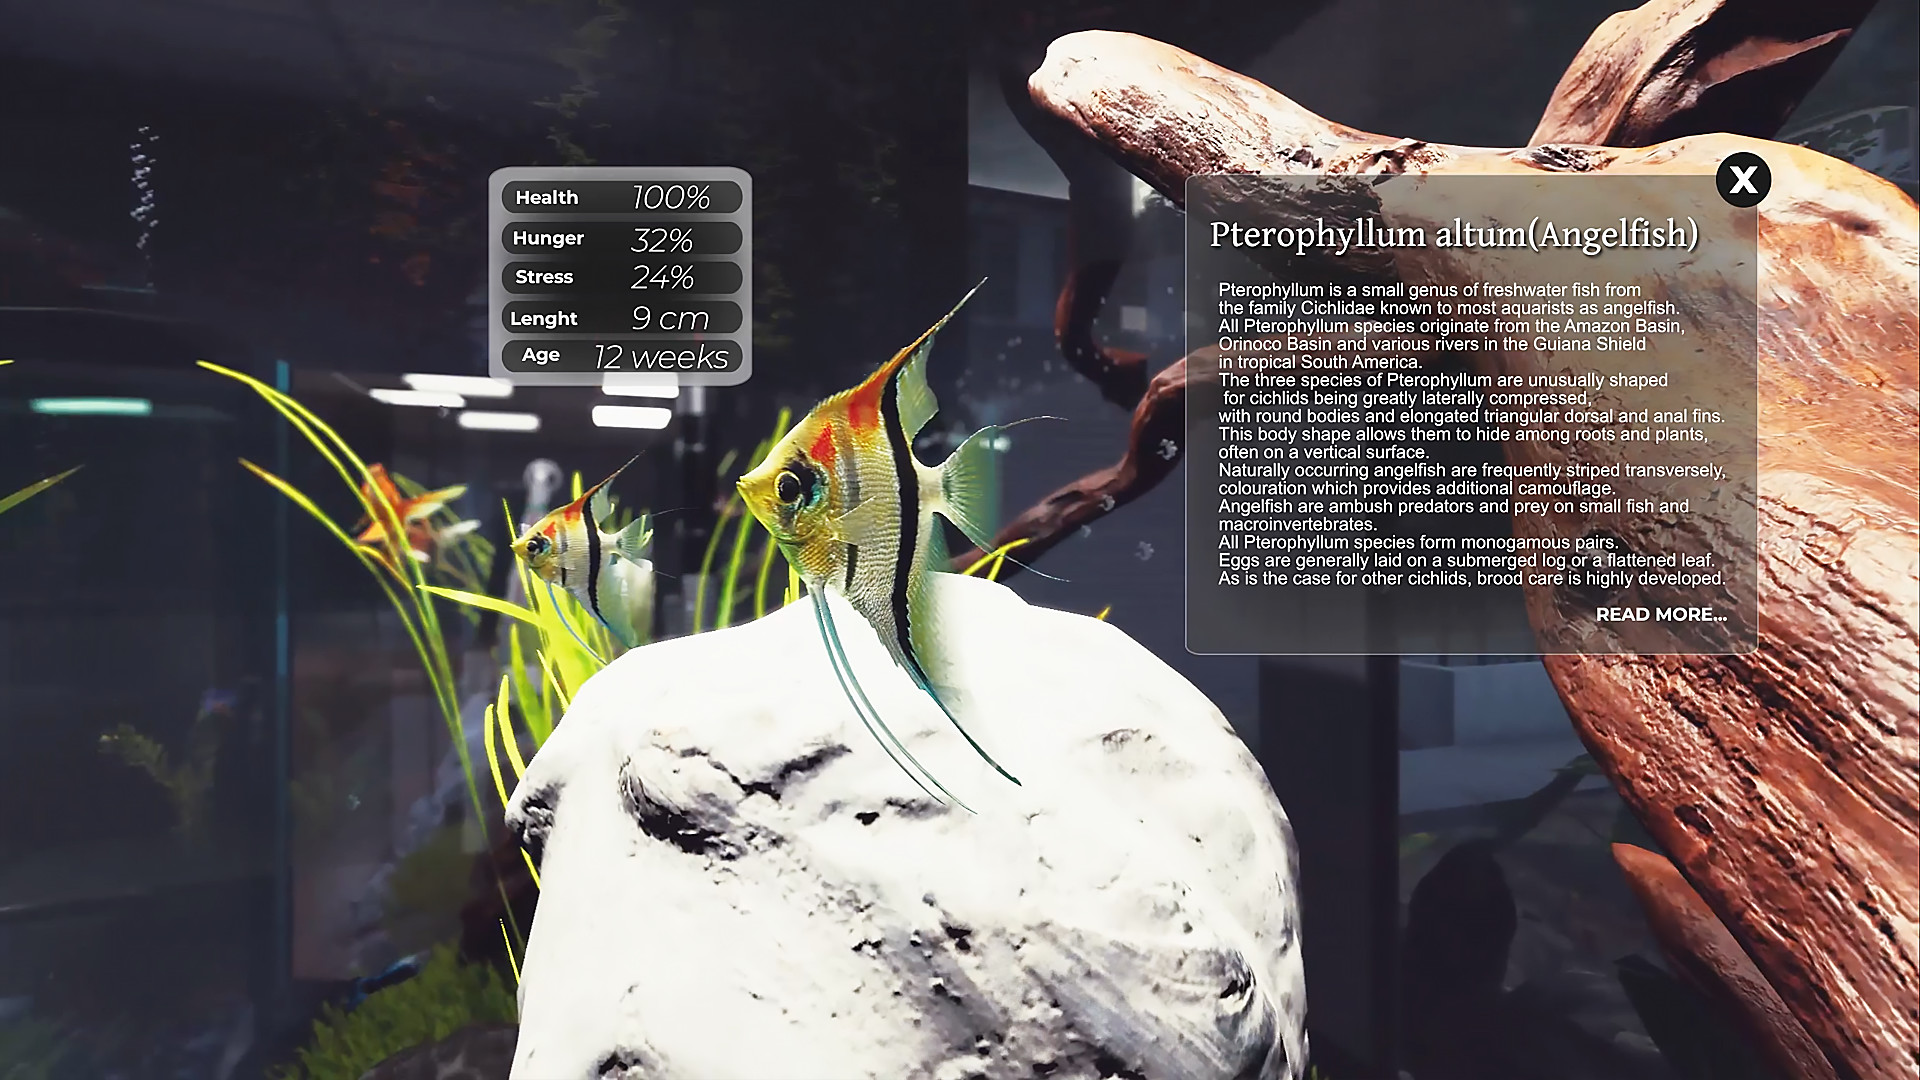 Aquarist - The Realistic aquarium shop management and fish farming. screenshot